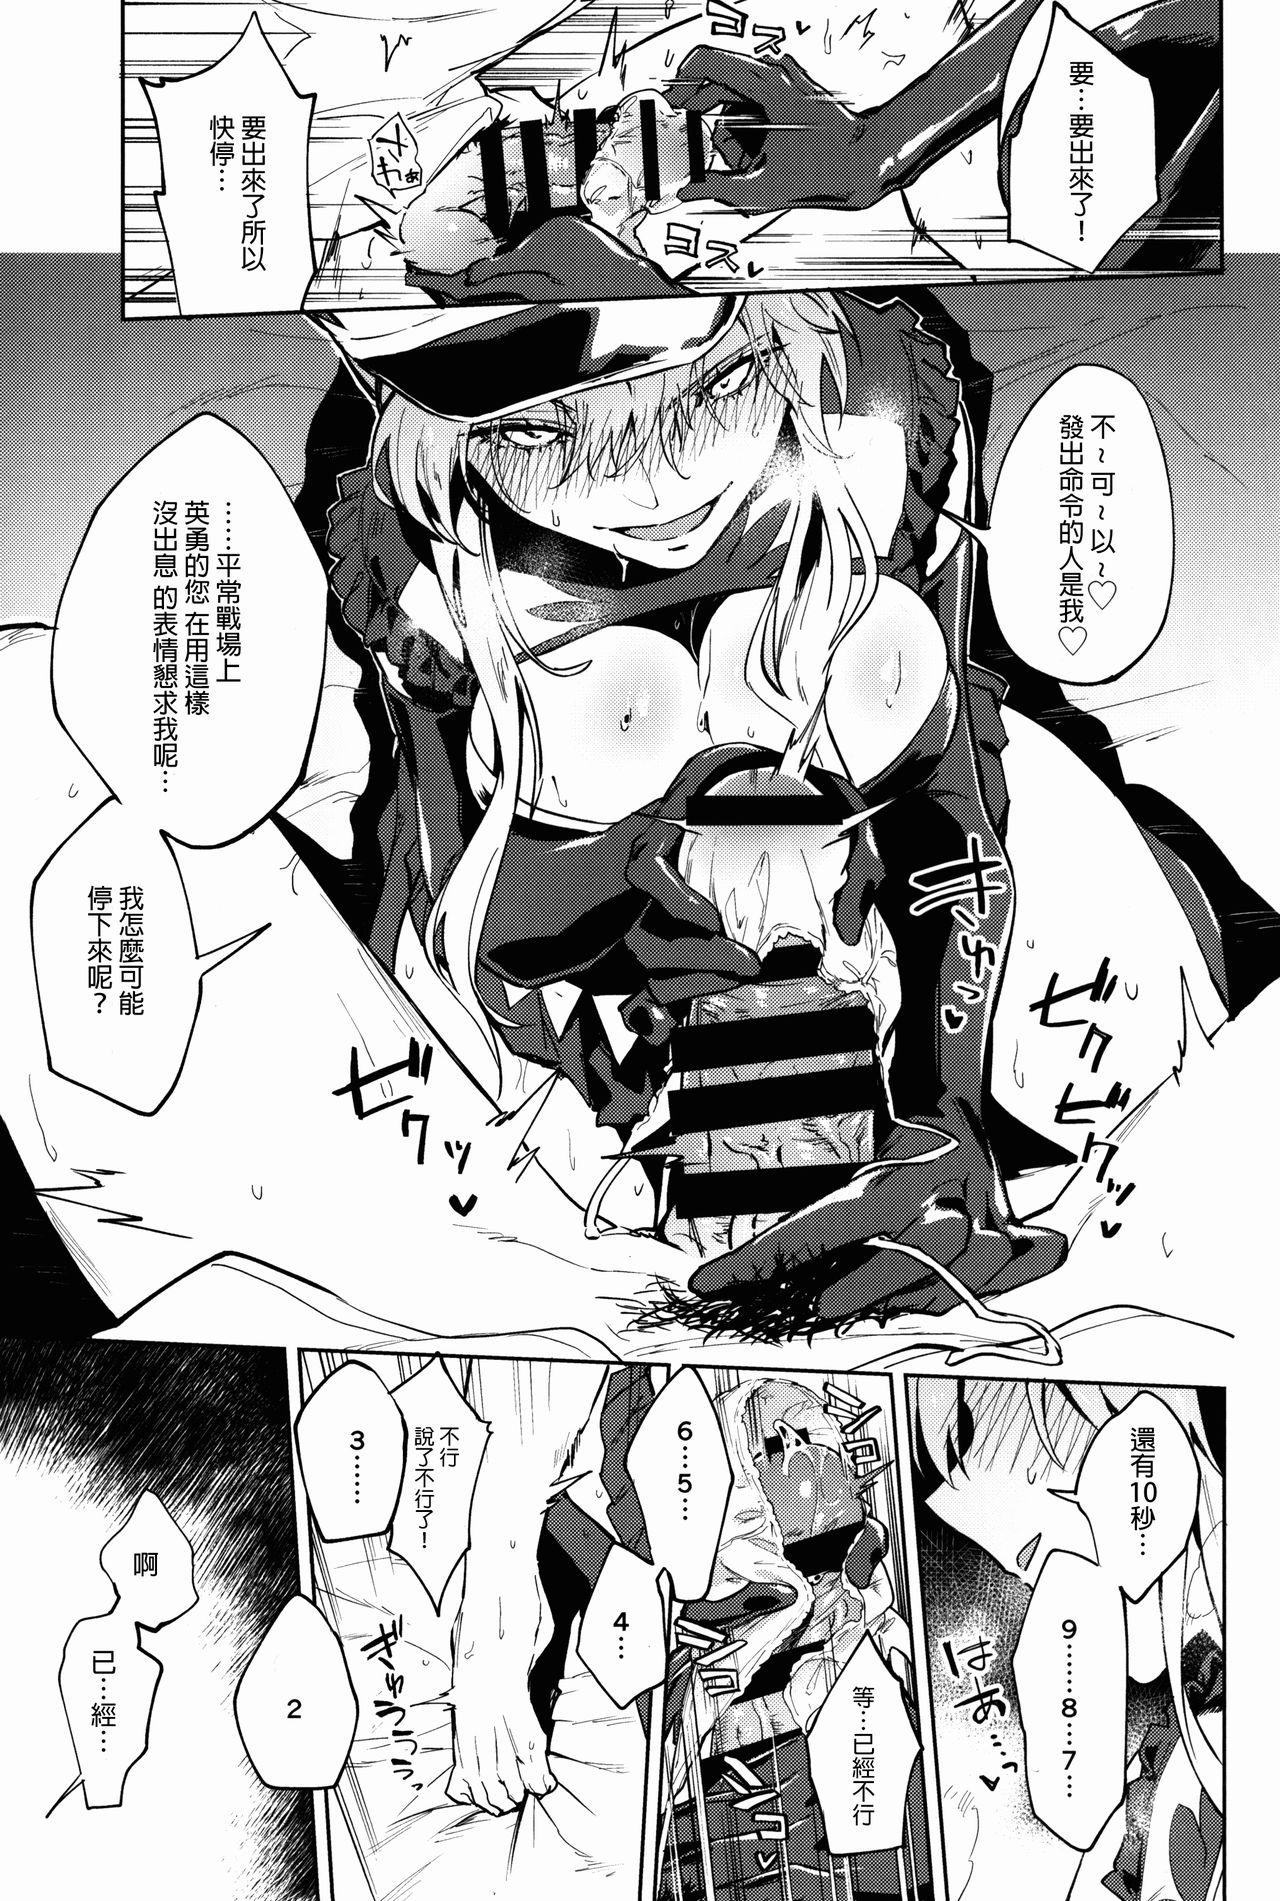 Negra Gokuchou Medb to Joou no Shitsuke - Fate grand order Mom - Page 8